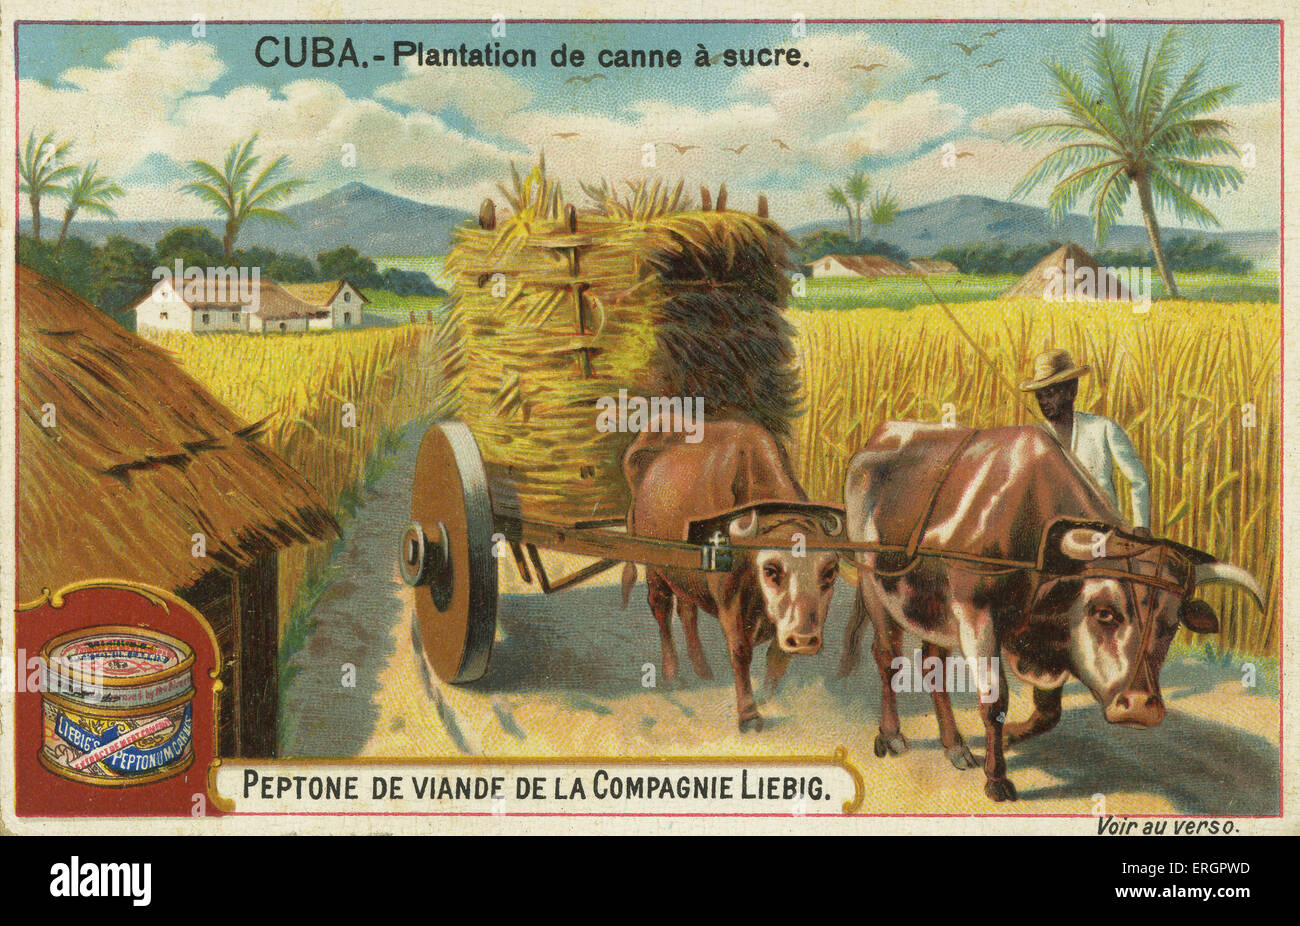 Zucker-Plantage, Kuba, 19. Jahrhundert. Landwirt fährt Ochsen ziehen einen Karren, beladen mit Zuckerrohr. Aus einer Rezeptkarte für Liebigs Stockfoto